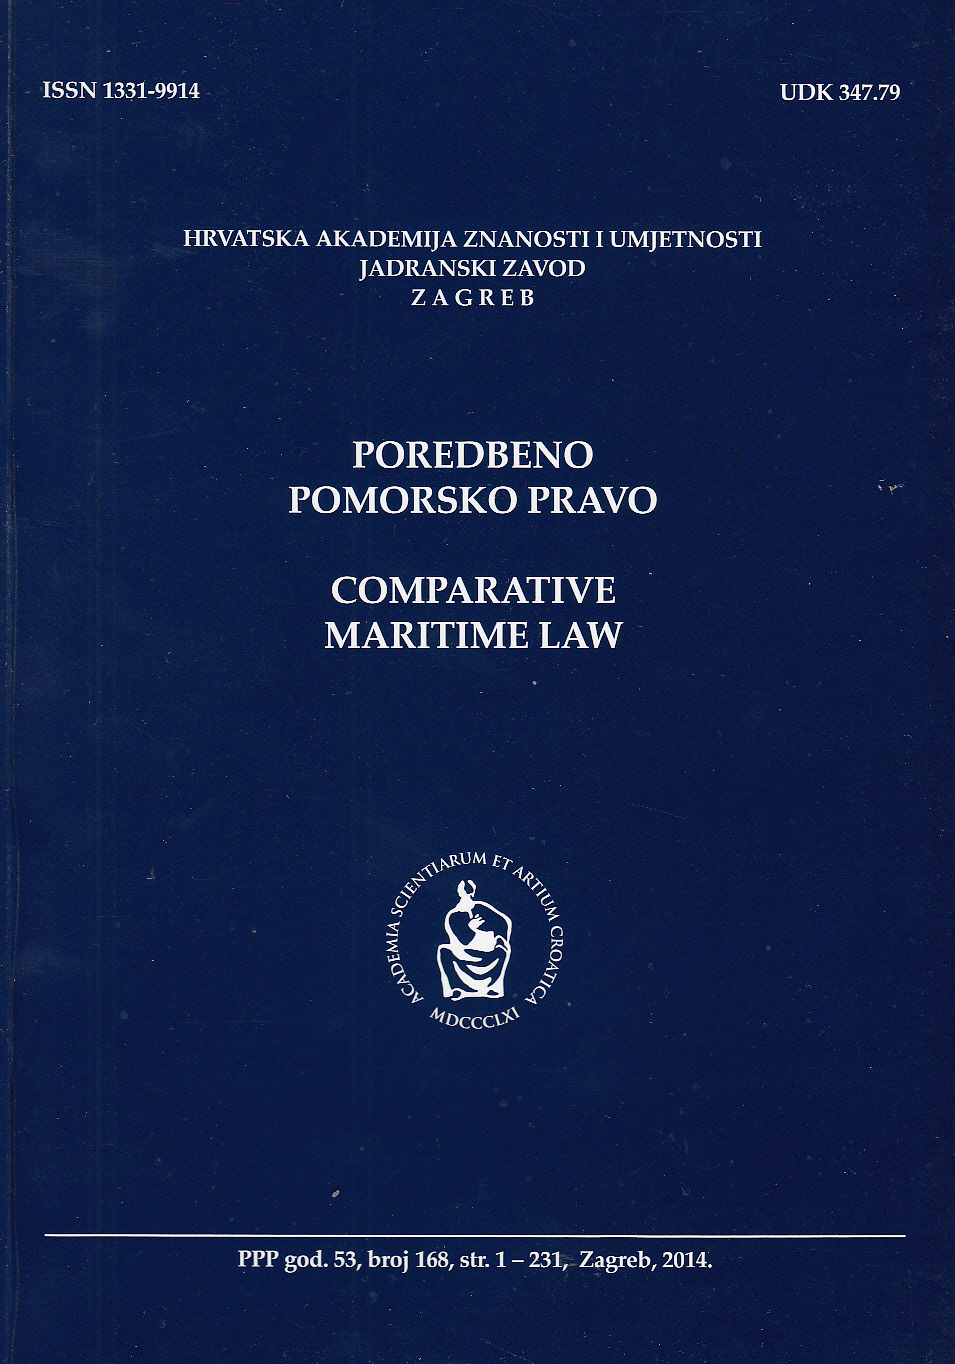 Izmjene i dopune Pomorskog zakonika glede ugovora o prijevozu putnika i njihove prtljage morem